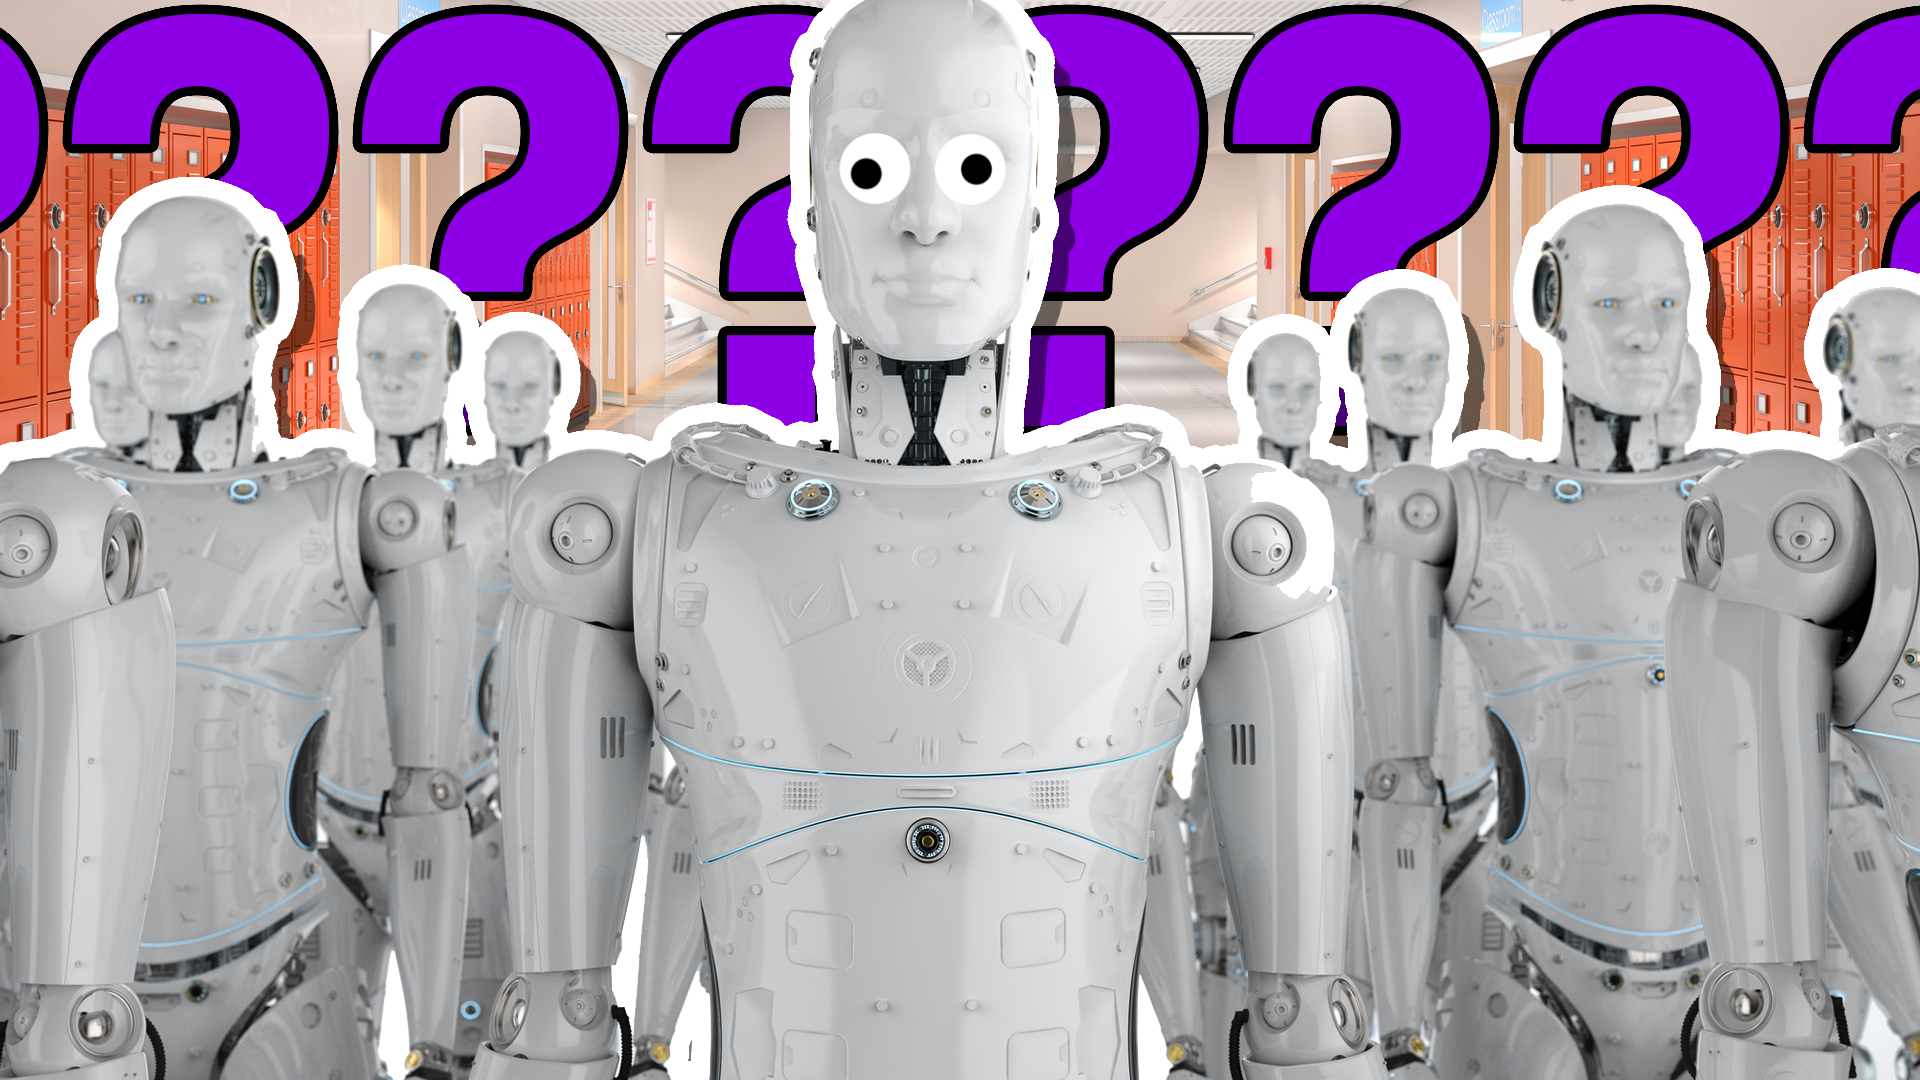 Robots in a school corridor – personality quiz